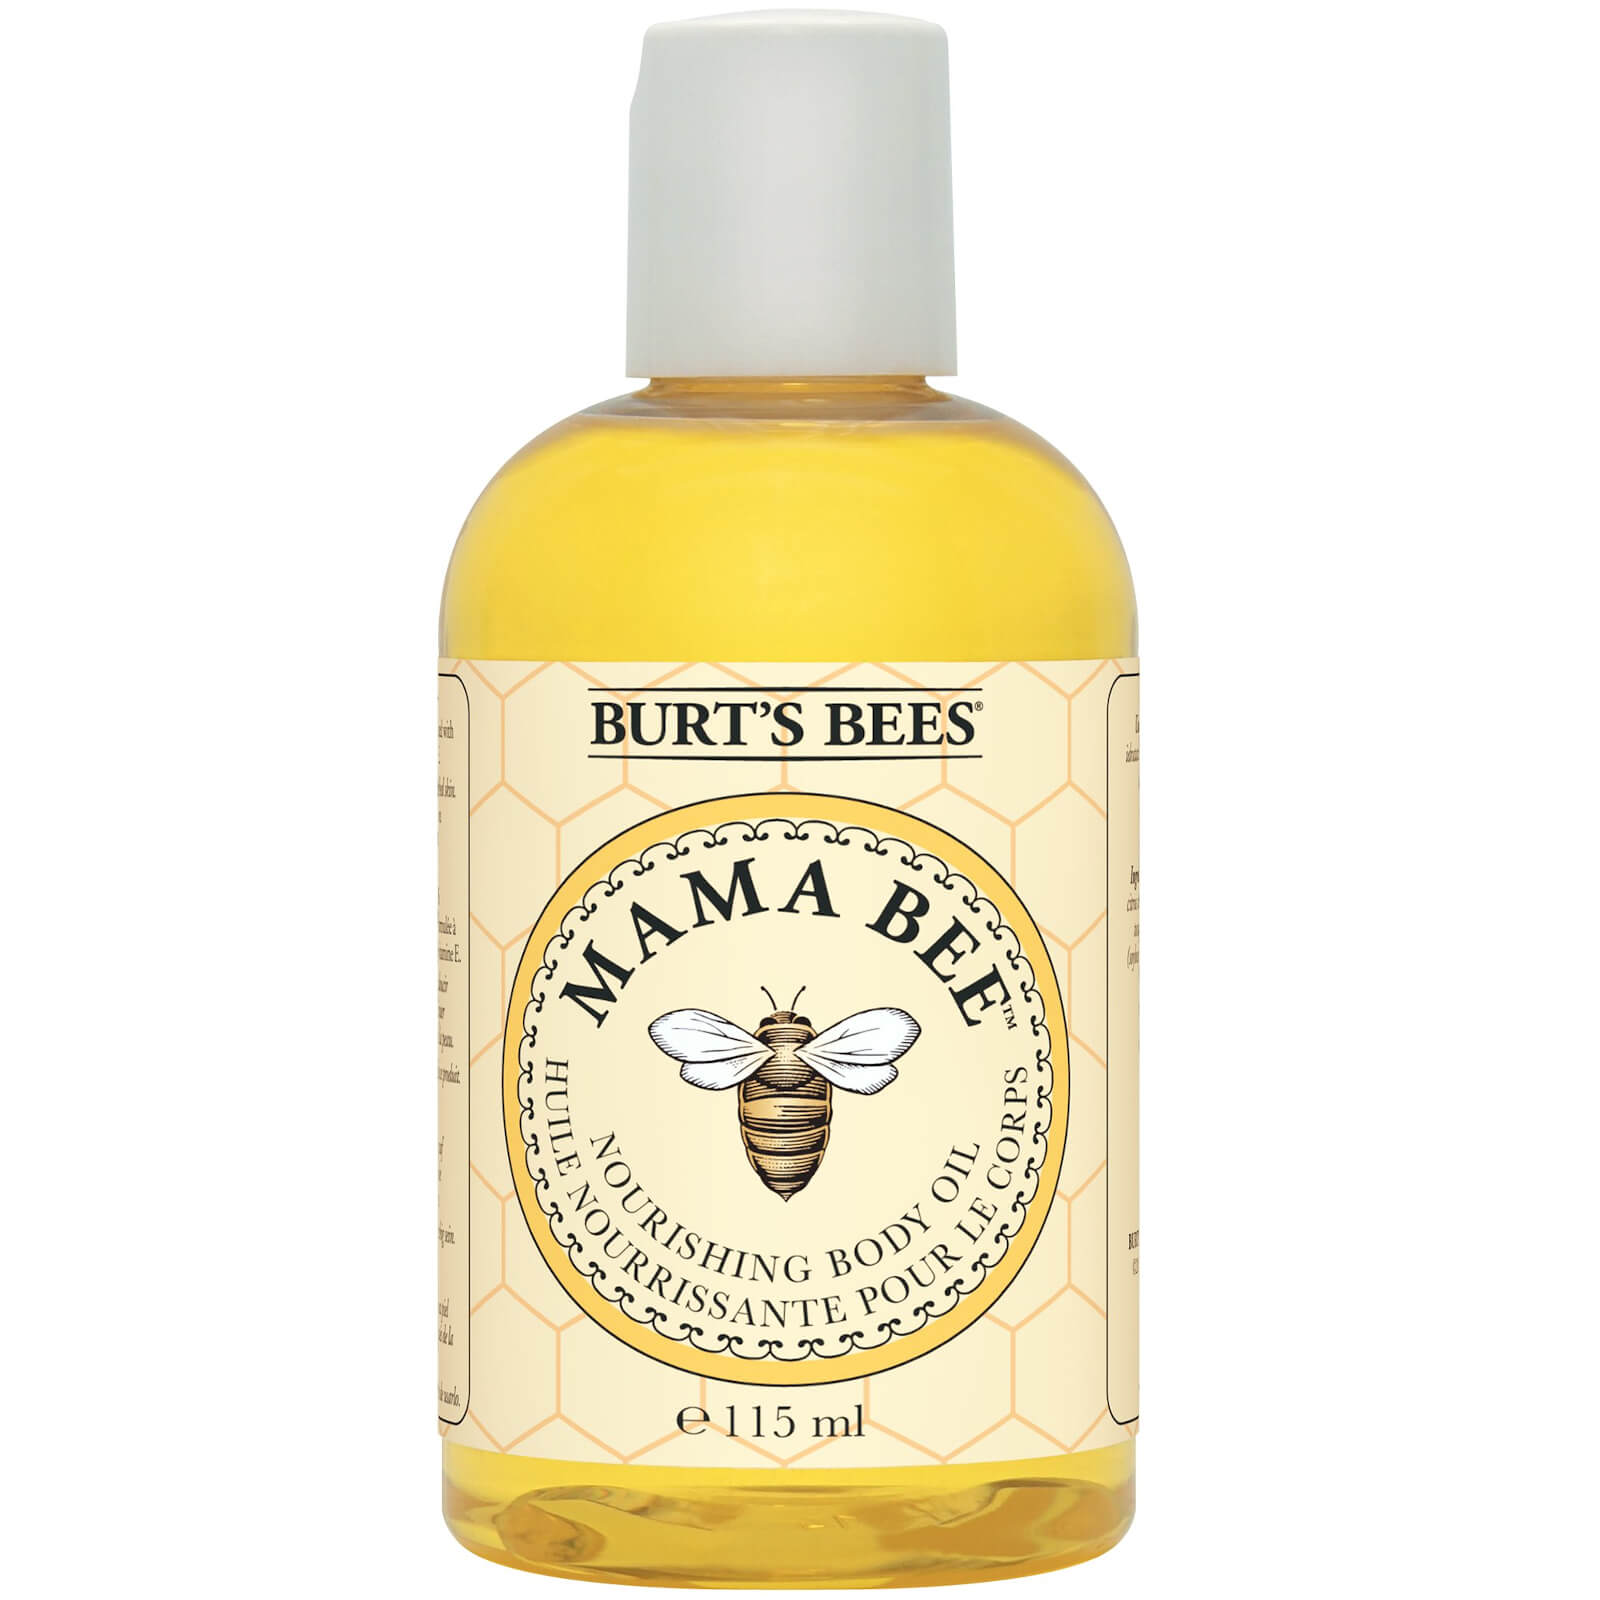 Burt's Bees Mama Bee Nourishing Body Oil With Vitamin E (115ml)